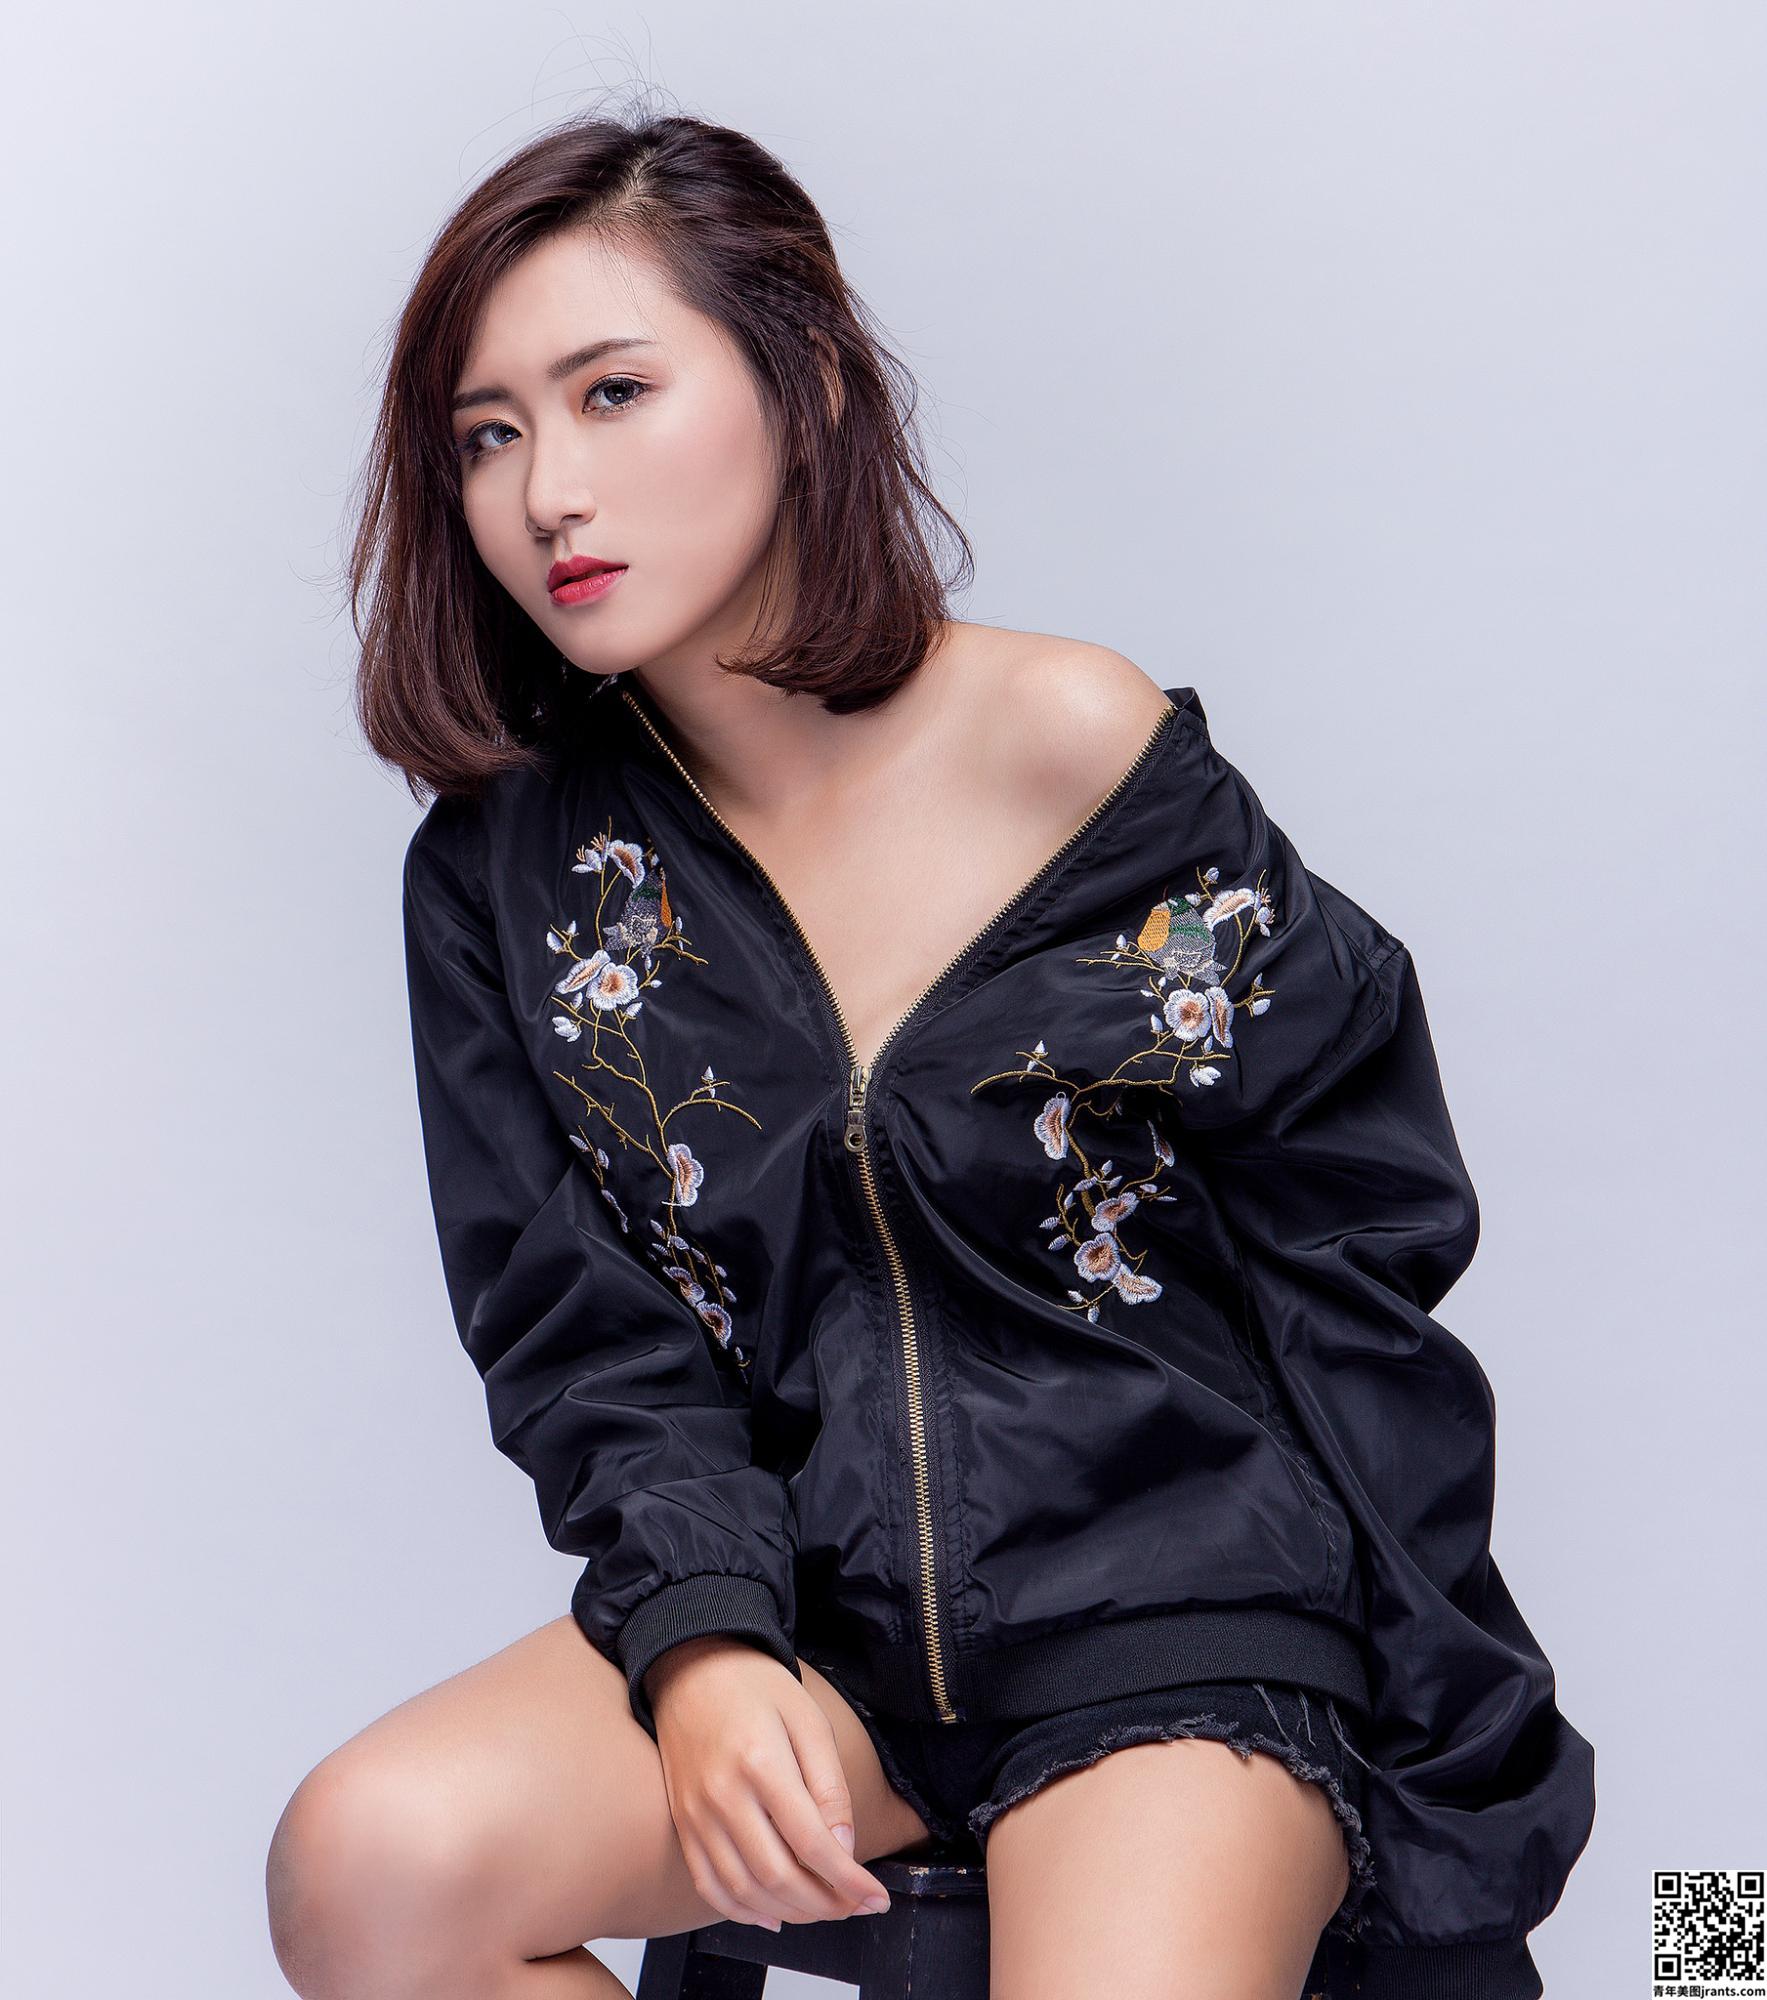 大胆的模特在Le Dinh Tin的照片中炫耀她的火辣身材-03 (74P)